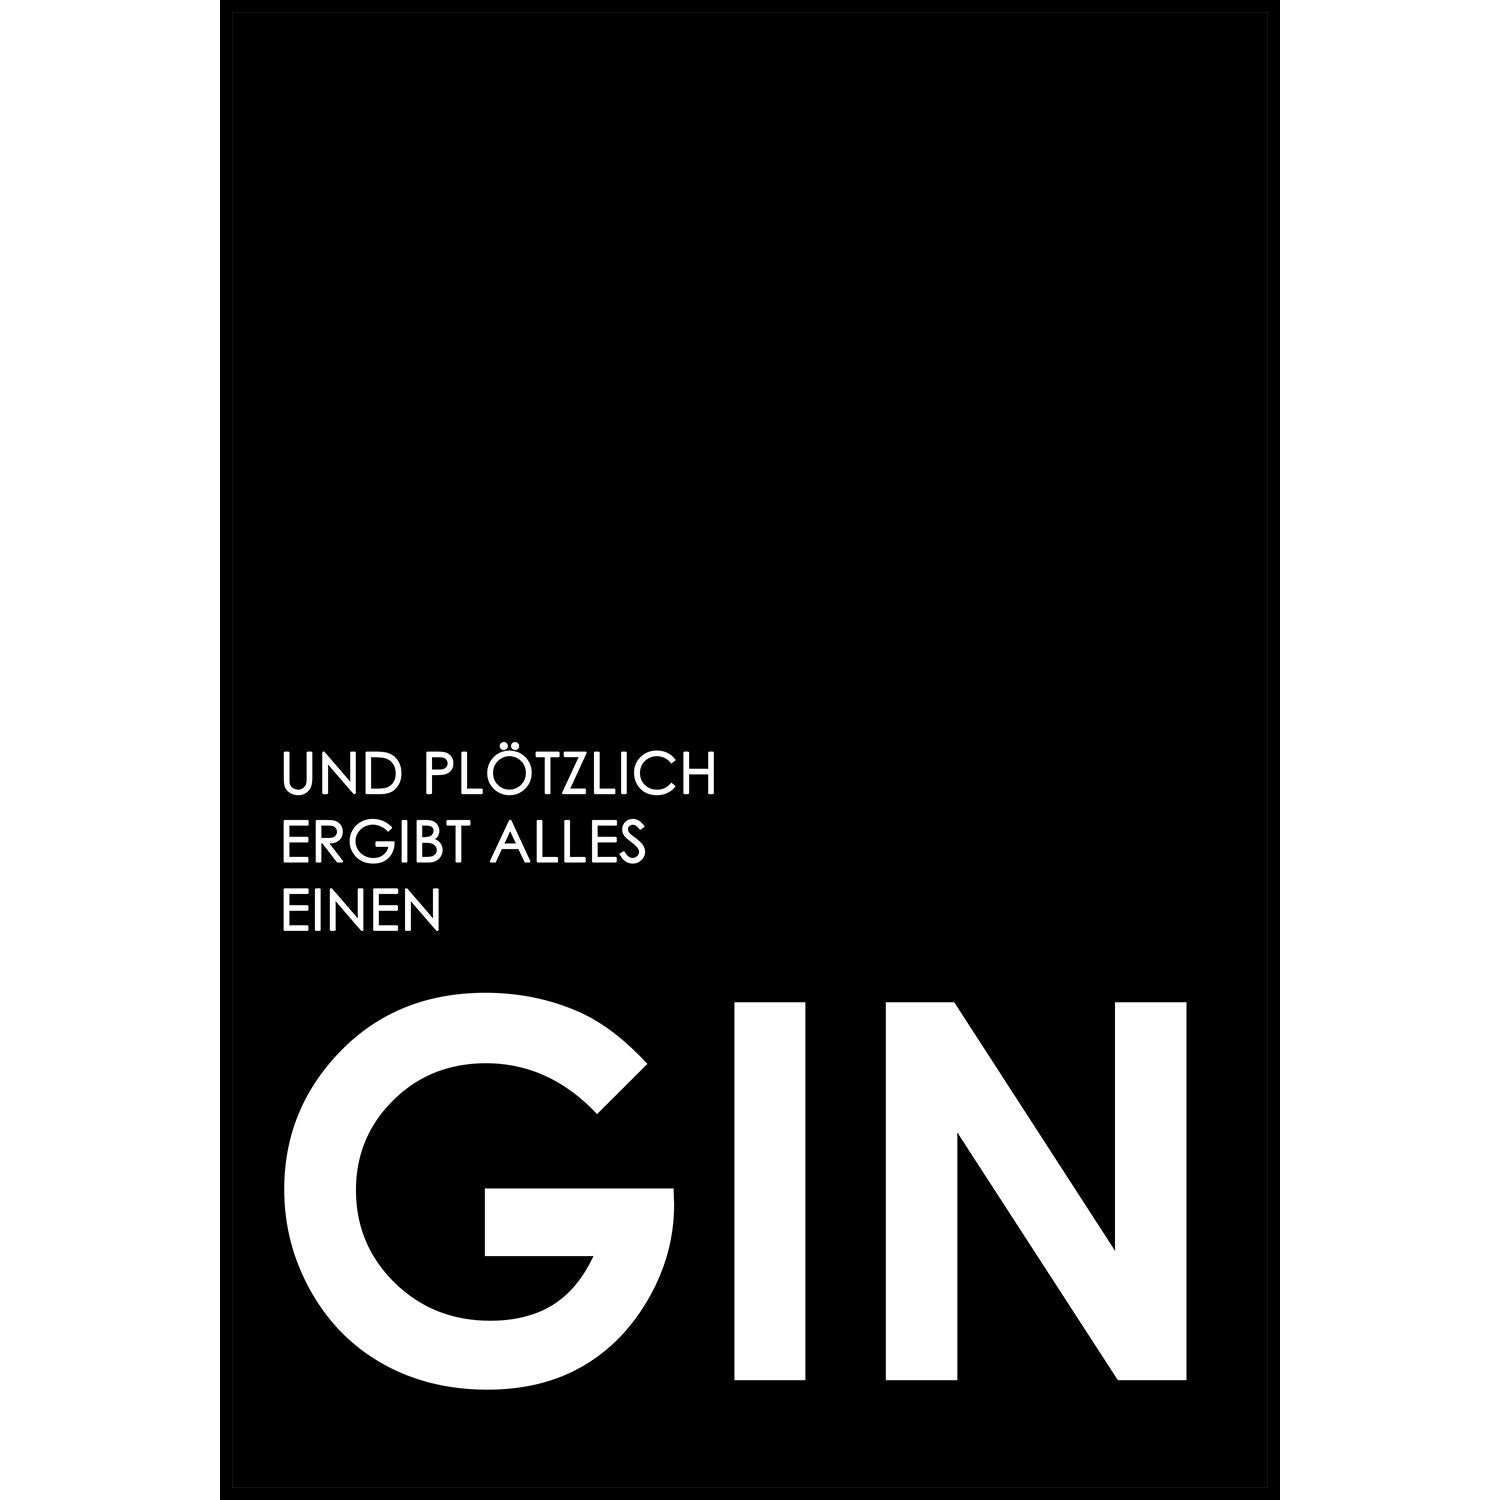 Gin Poster | Und plötzlich ergibt alles einen Gin